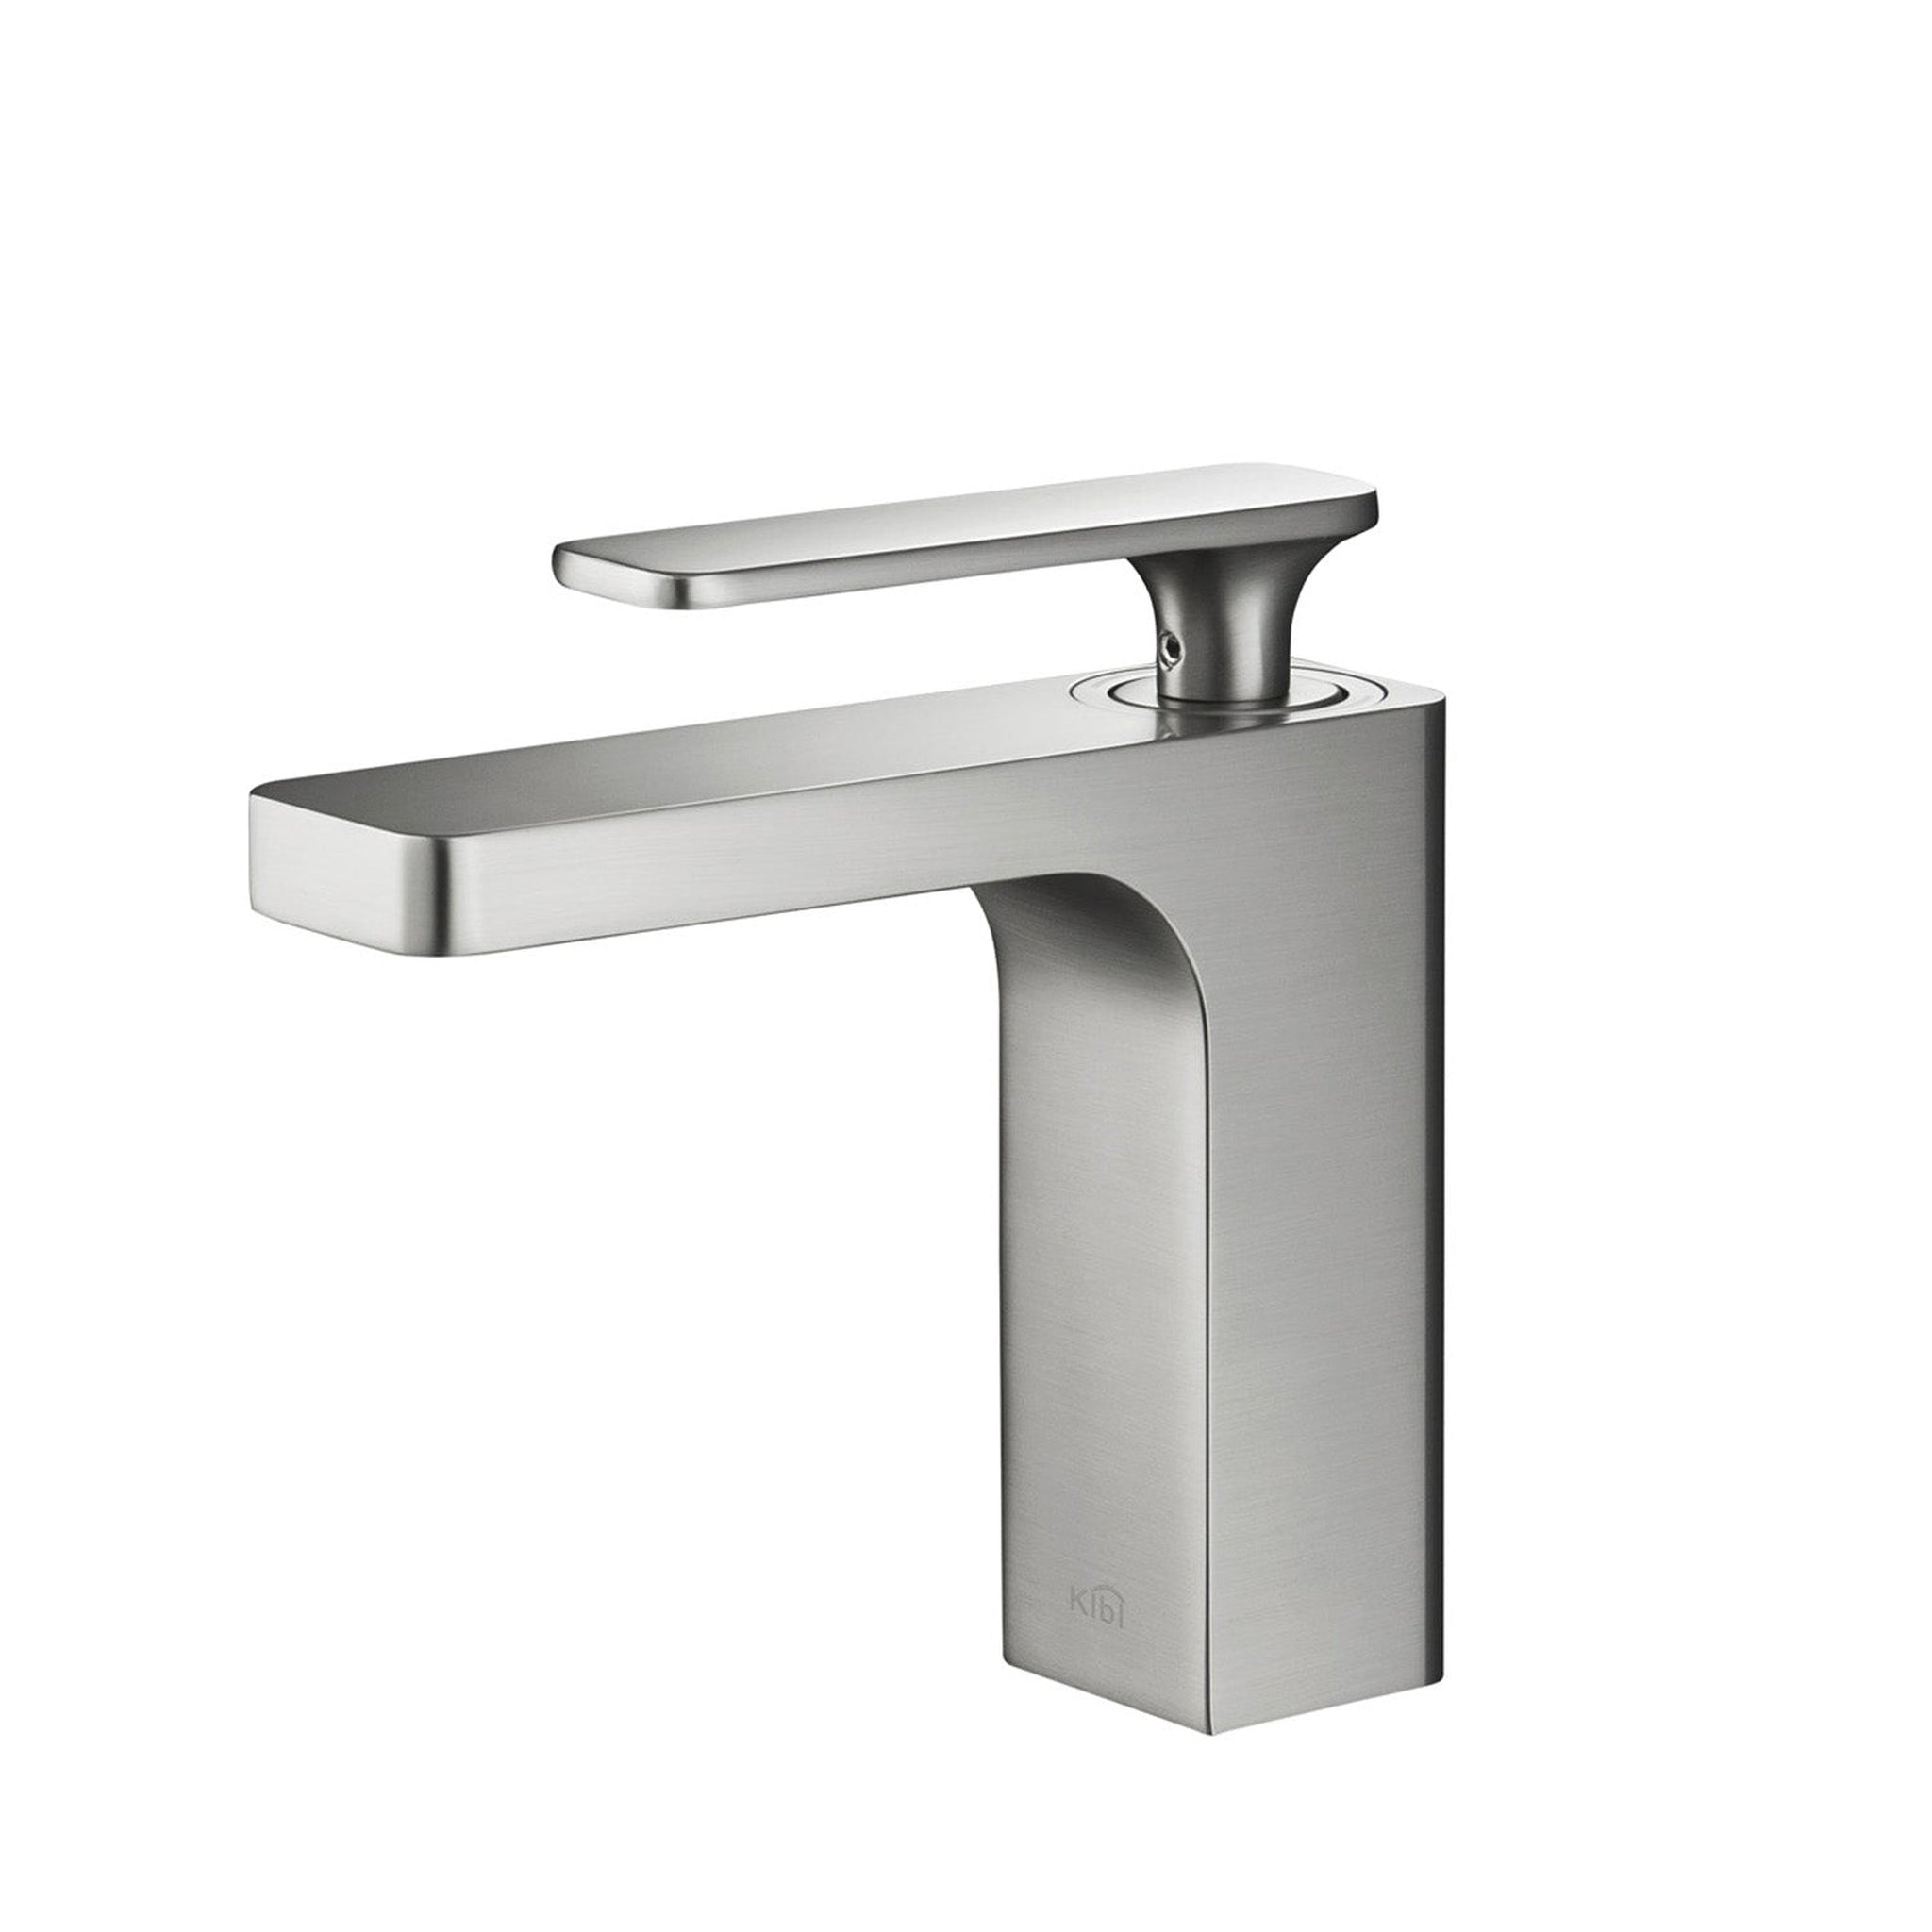 KIBI, KIBI Infinity Single Handle Brushed Nickel Solid Brass Bathroom Vanity Sink Faucet